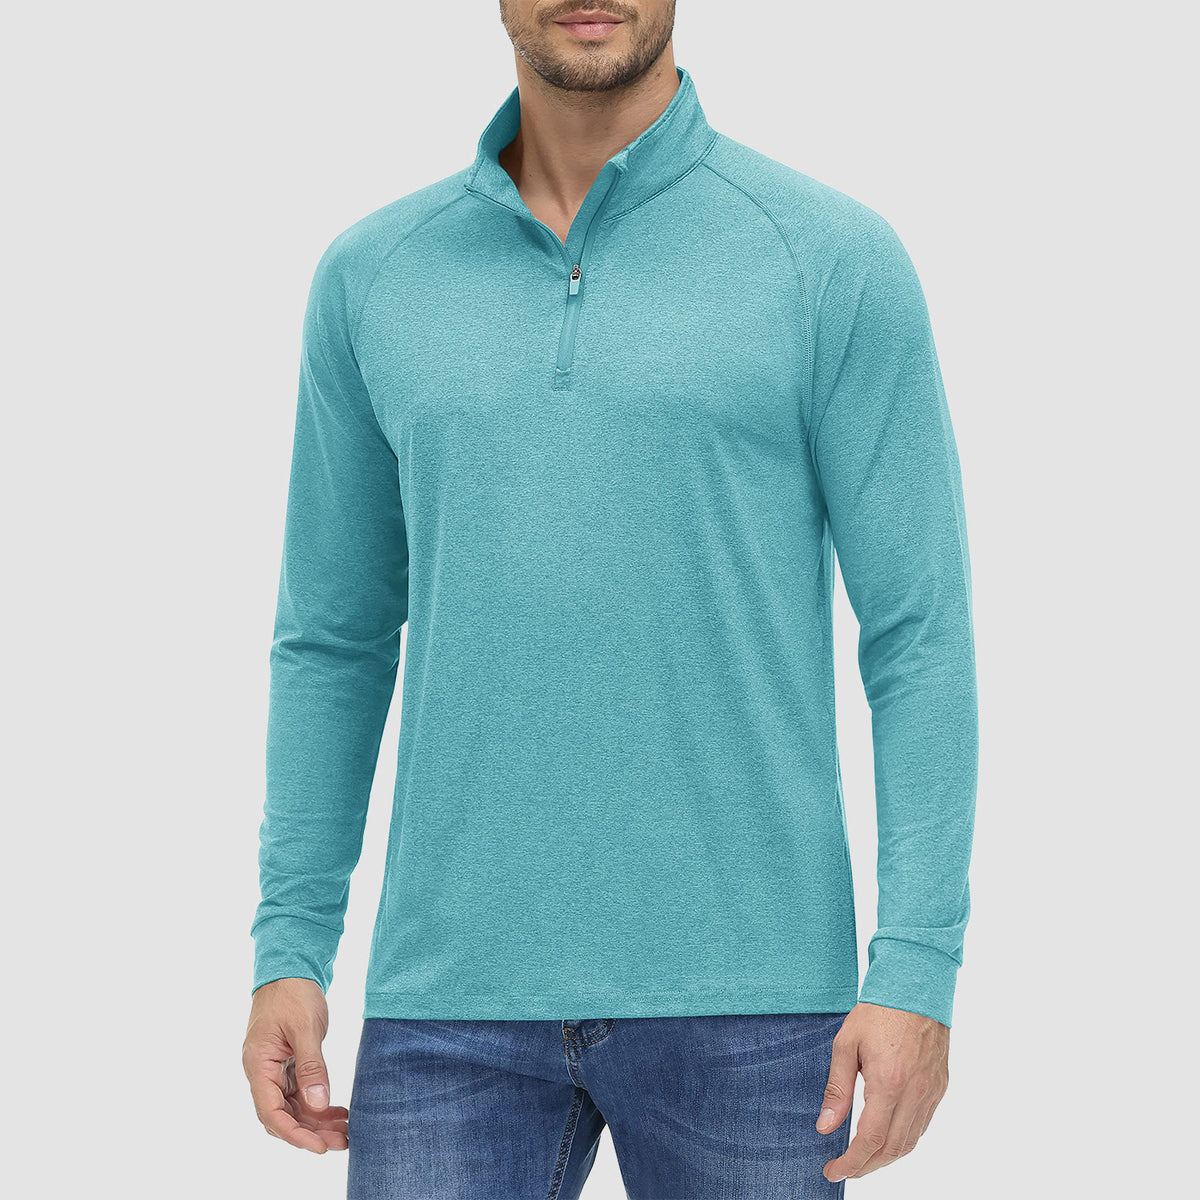 Mens Sun Protection Golf Shirt Underwear Long Sleeve Golf Shirt